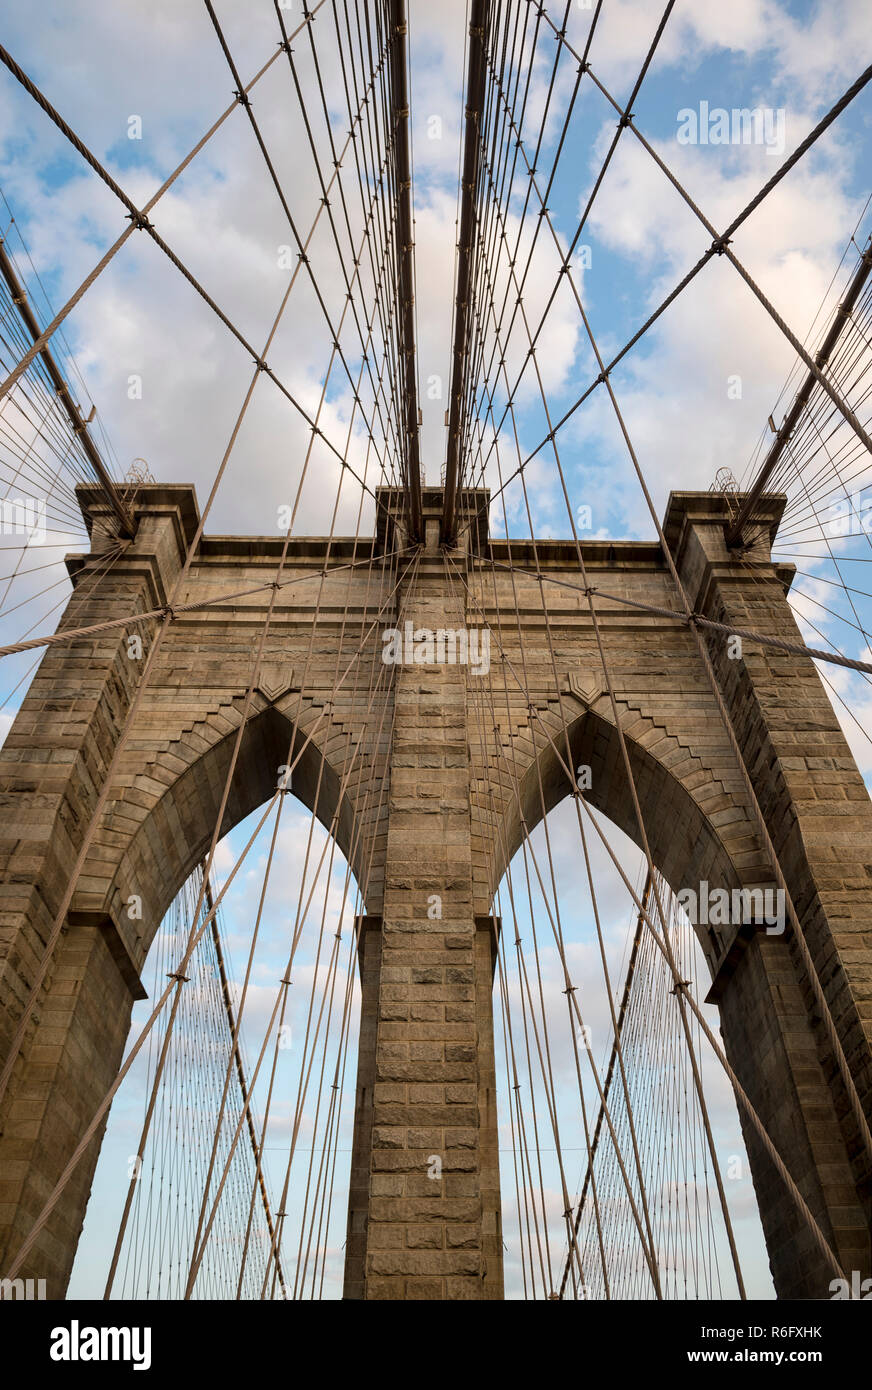 Scenic vista astratta di cavi in acciaio e la tessitura dei mattoni dell'iconico arcata in pietra torre del ponte di Brooklyn in morbido cielo blu al tramonto Foto Stock